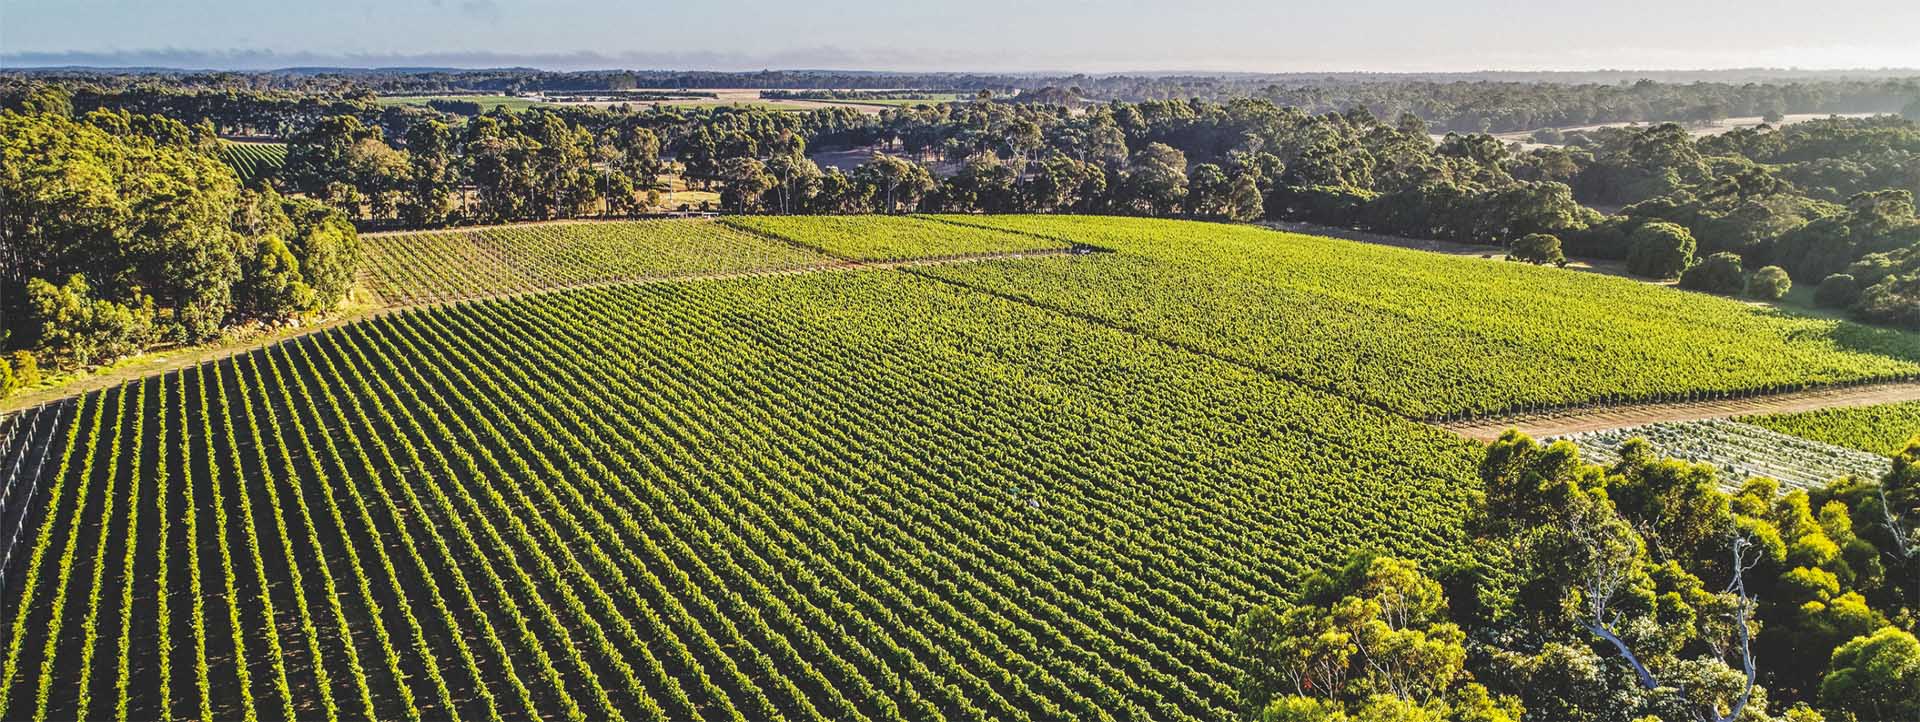 VOYAGER ESTATE aerial vineyard tours